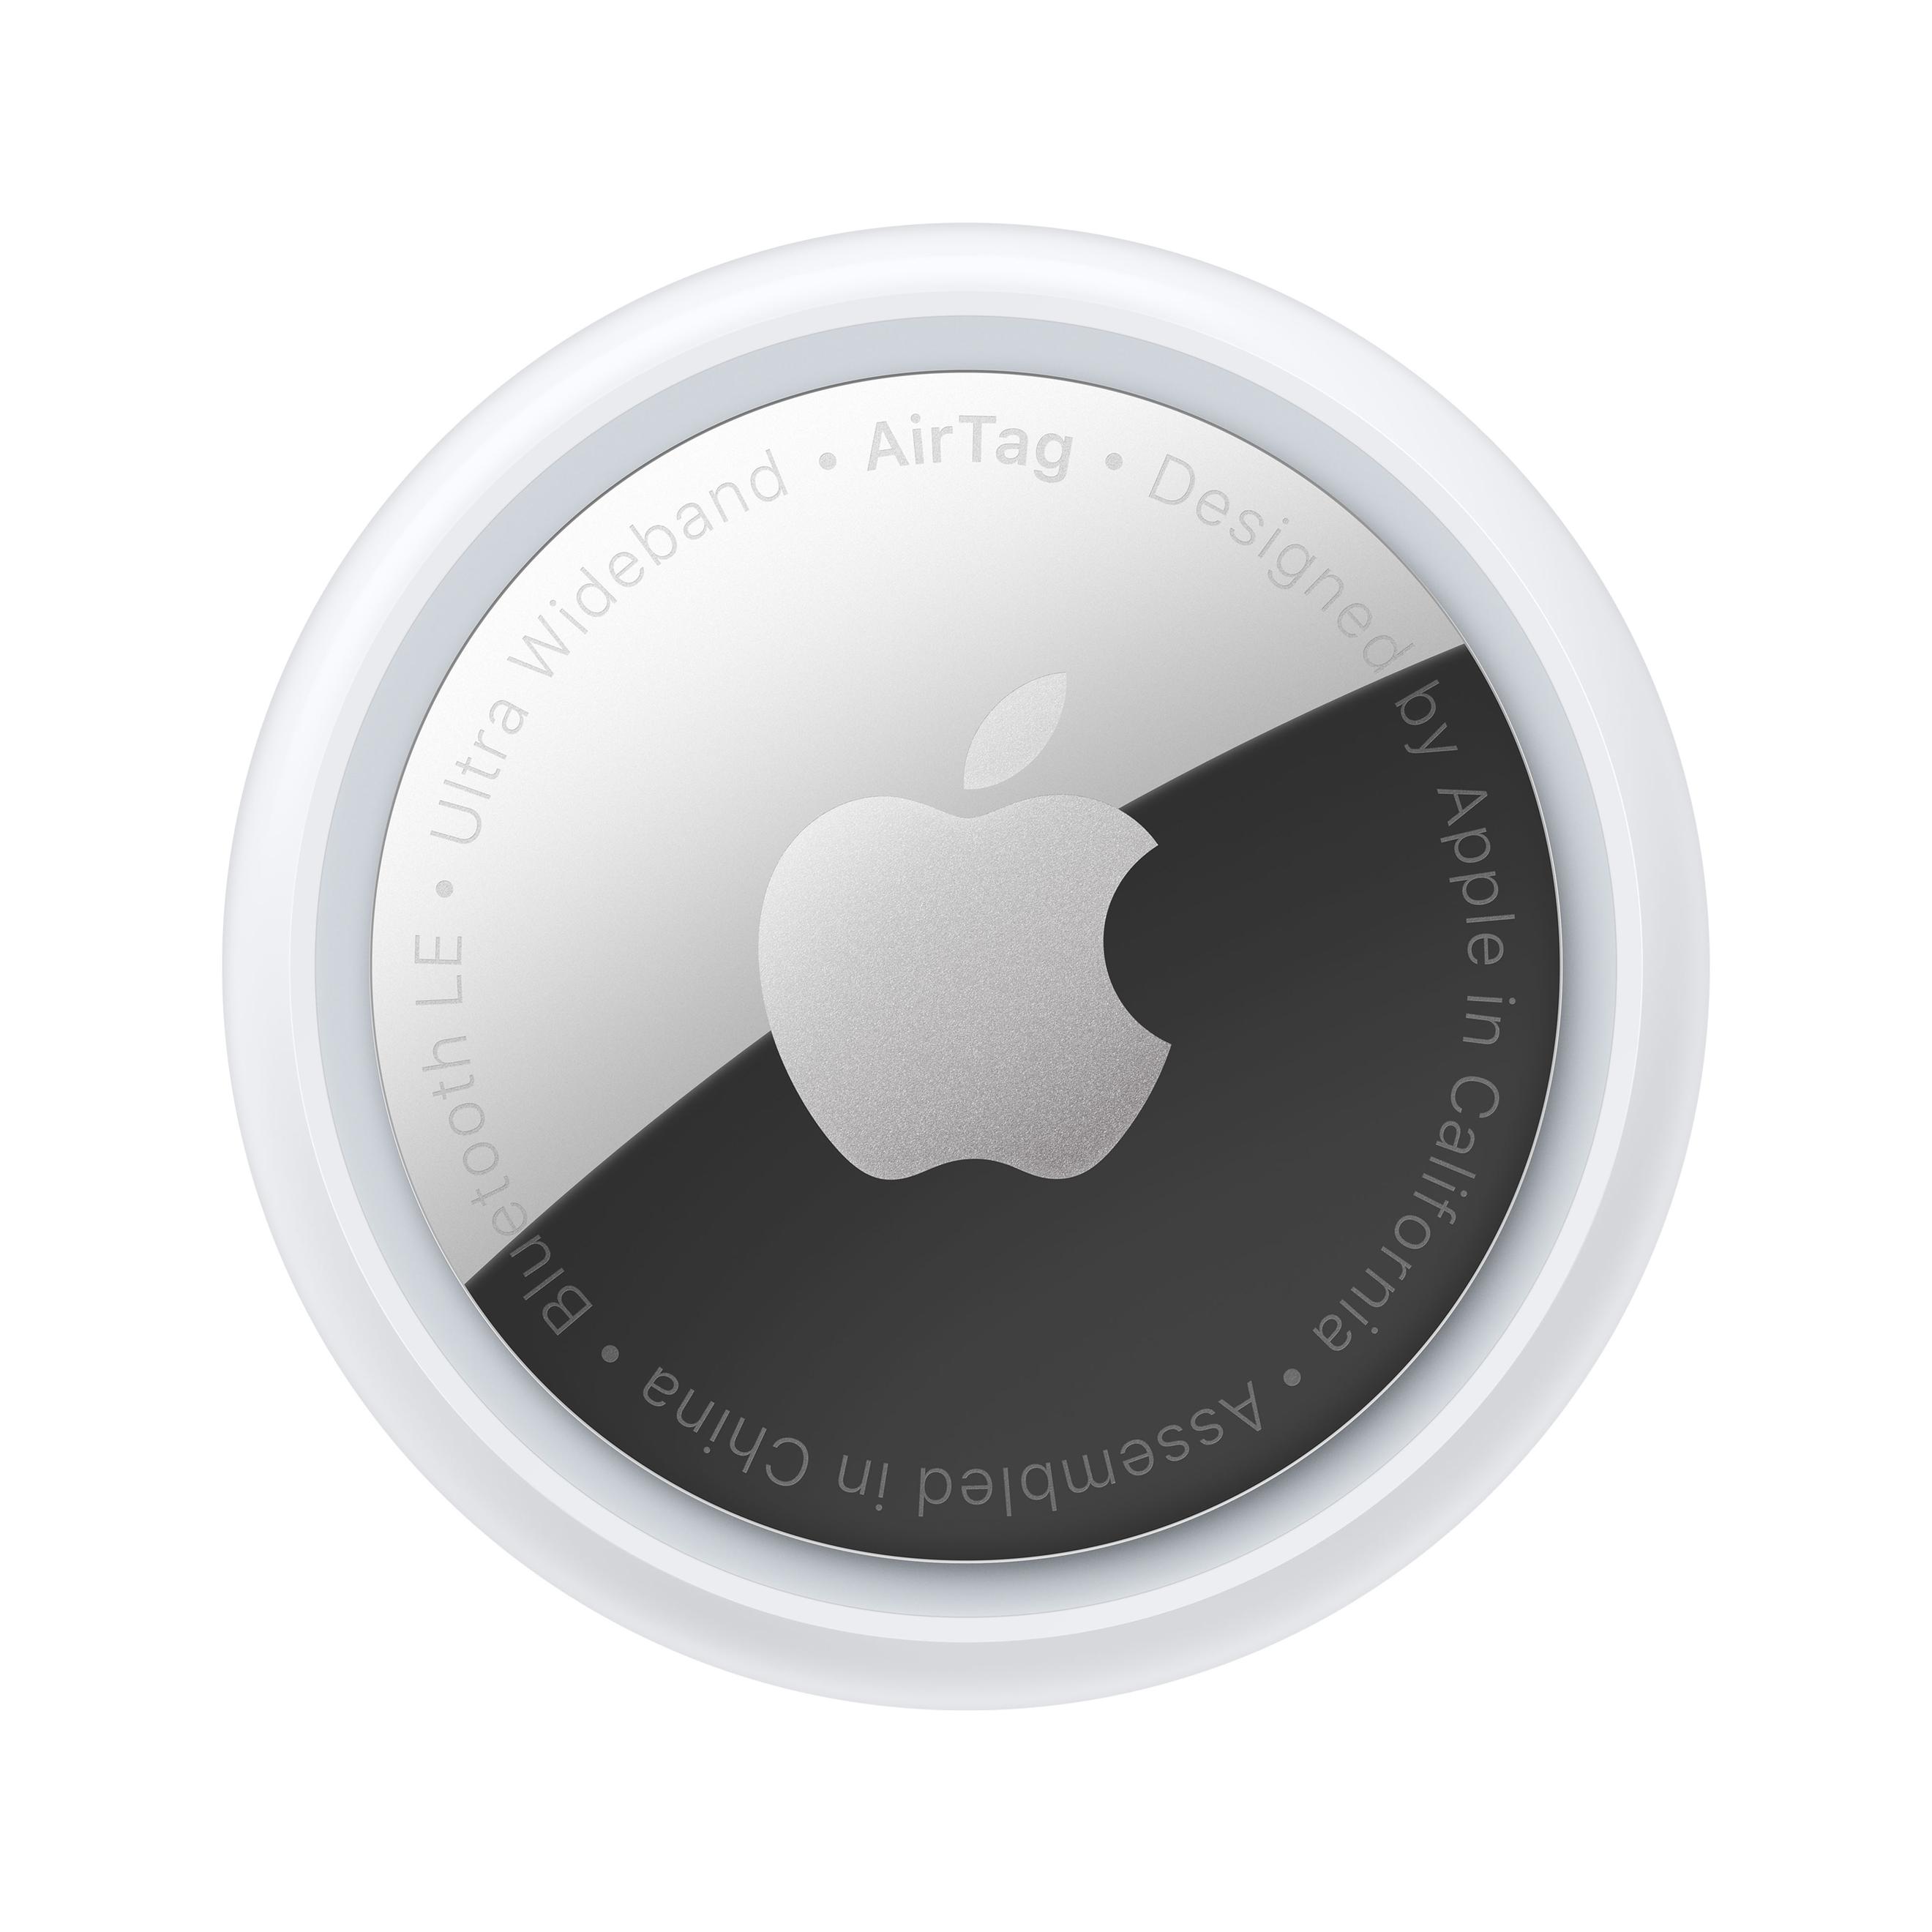 Offerta per Apple - AirTag confezione da 4 a 109,99€ in Euronics